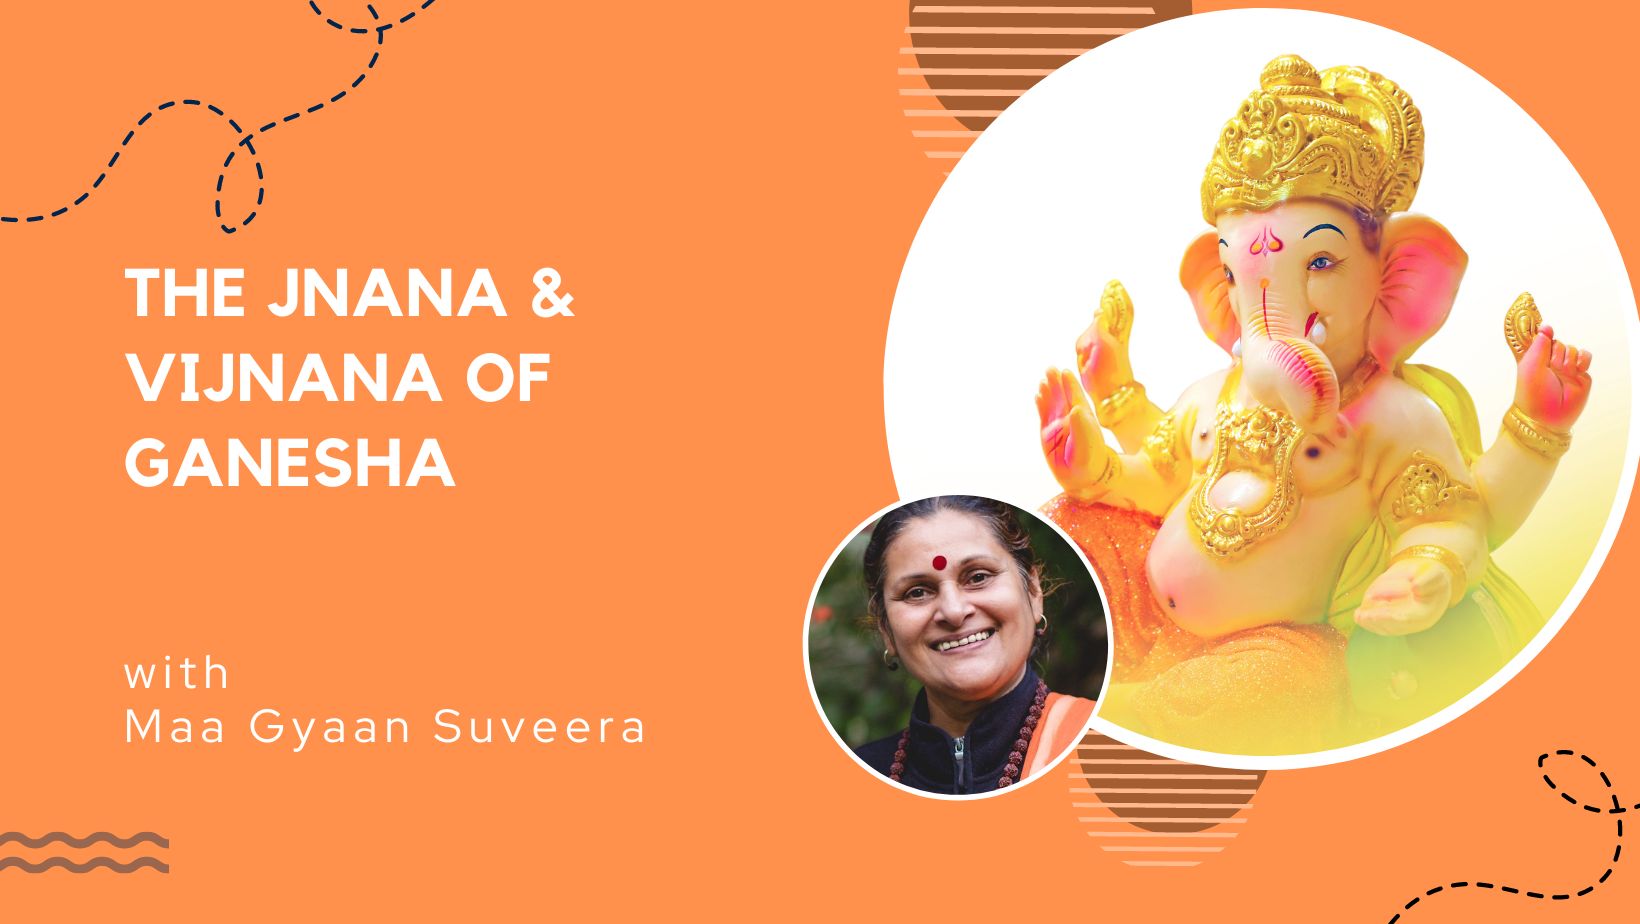 Jnana & Vijnana of Ganesha